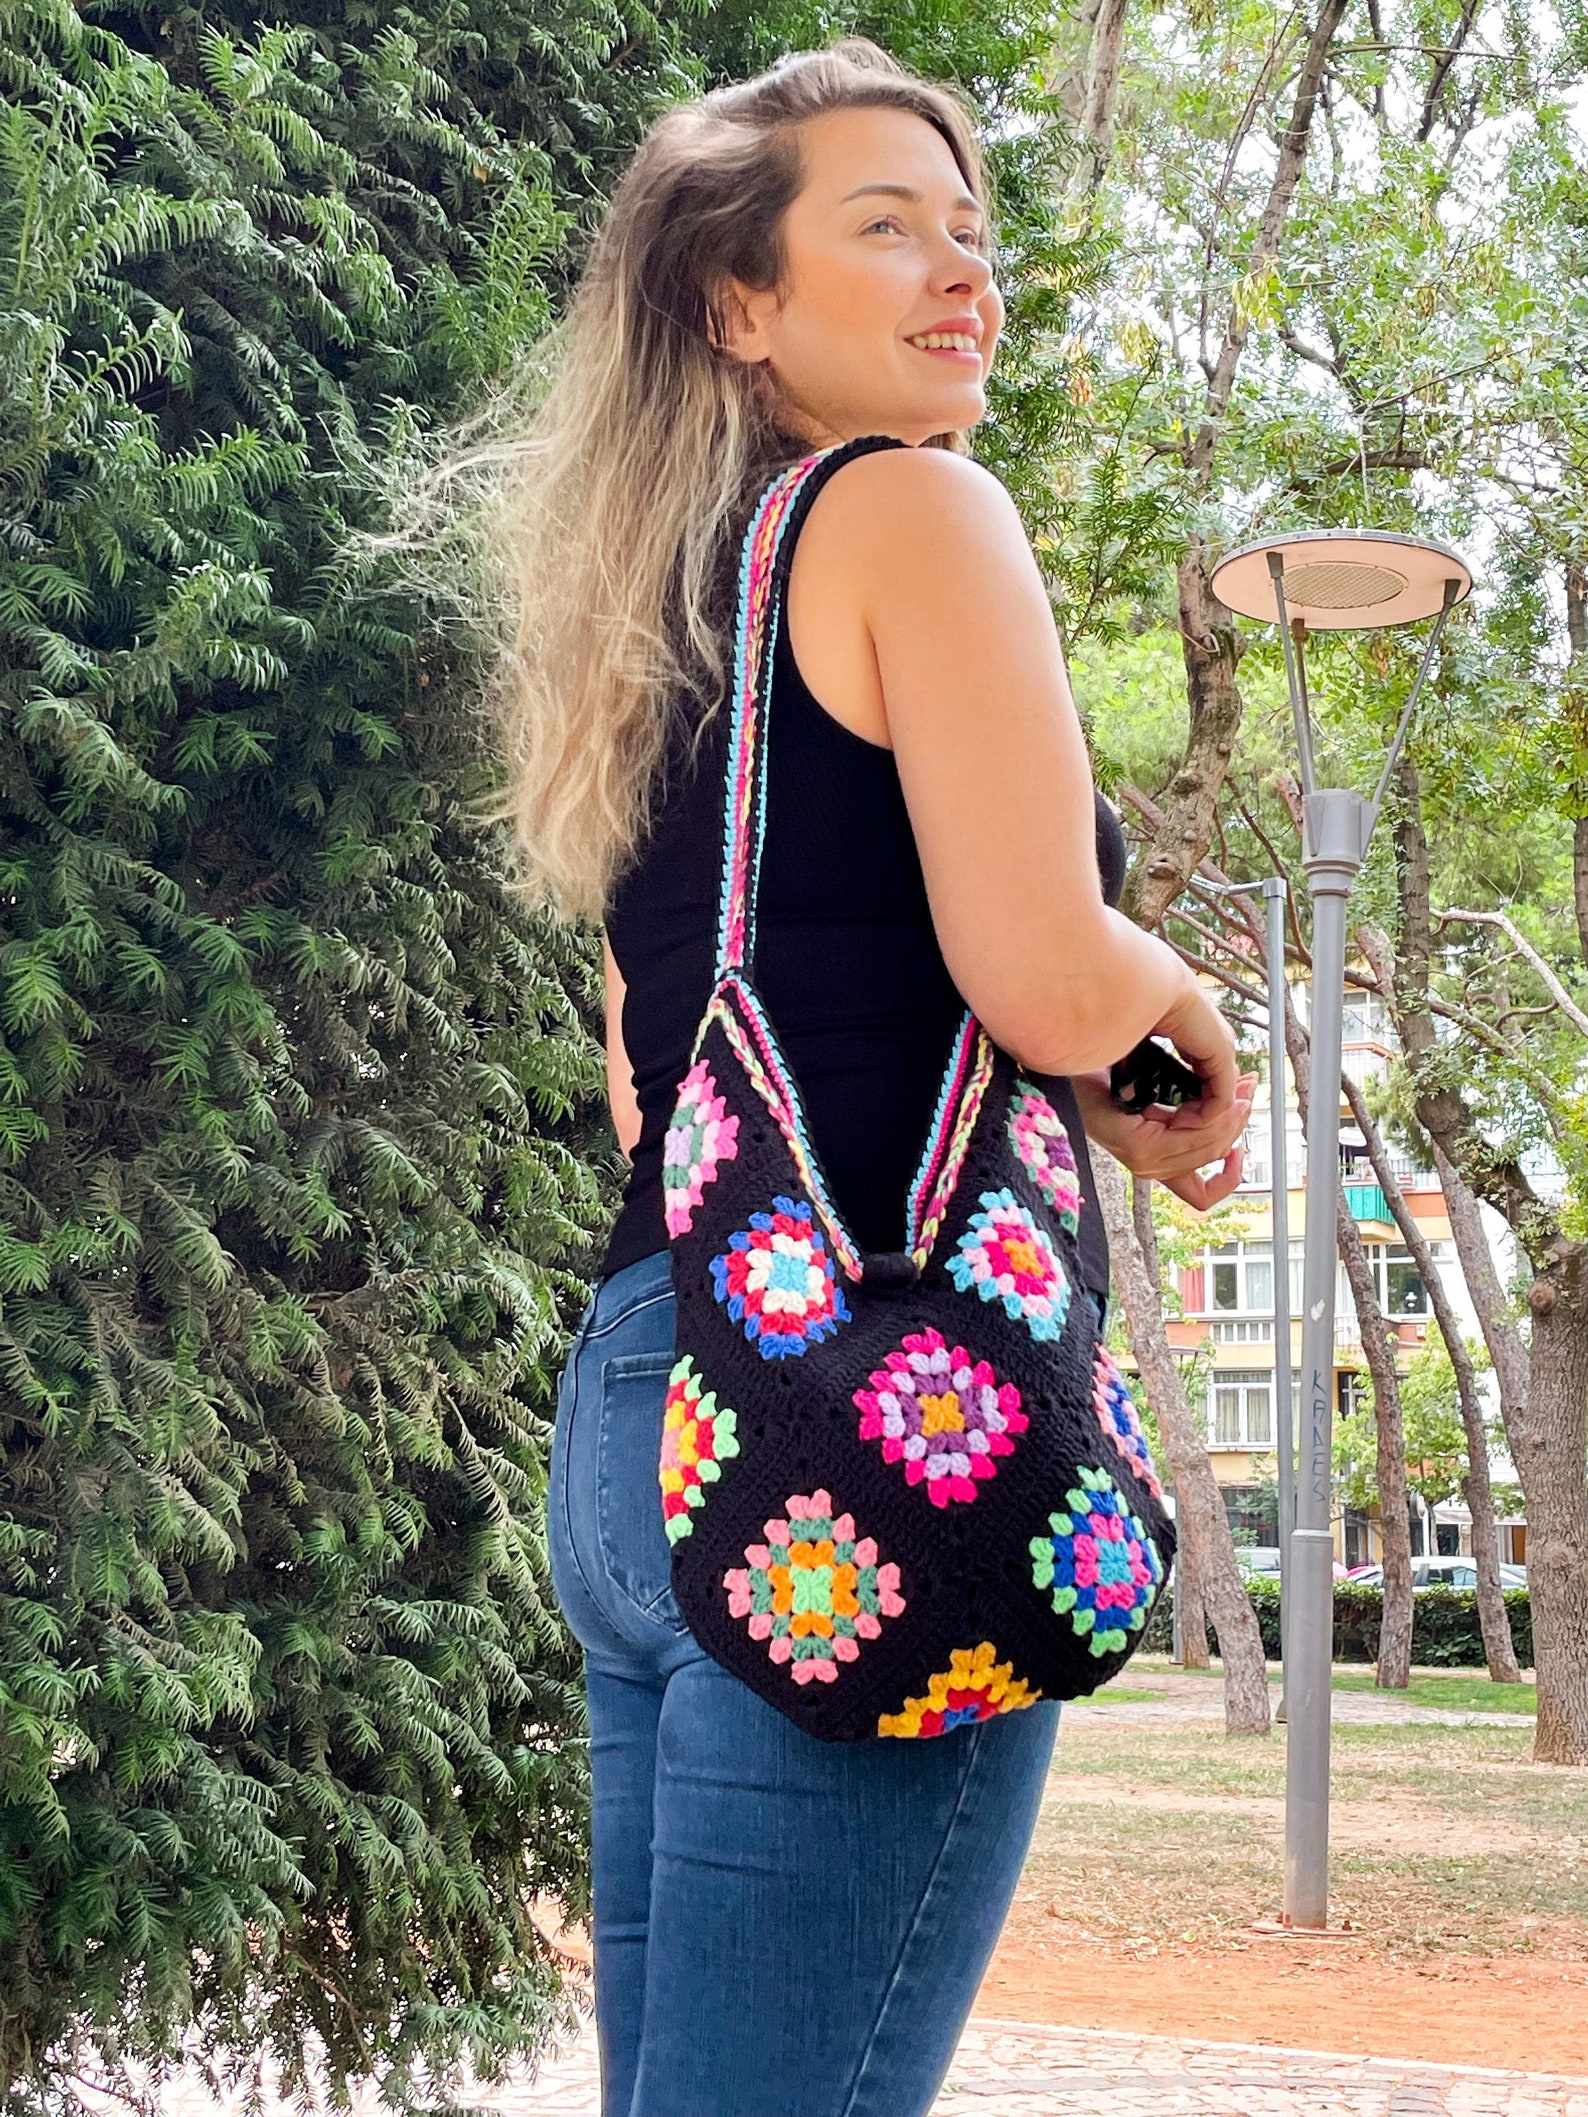 Black Colorful Granny Square Crochet Bag Knit Shoulder Bag - Etsy